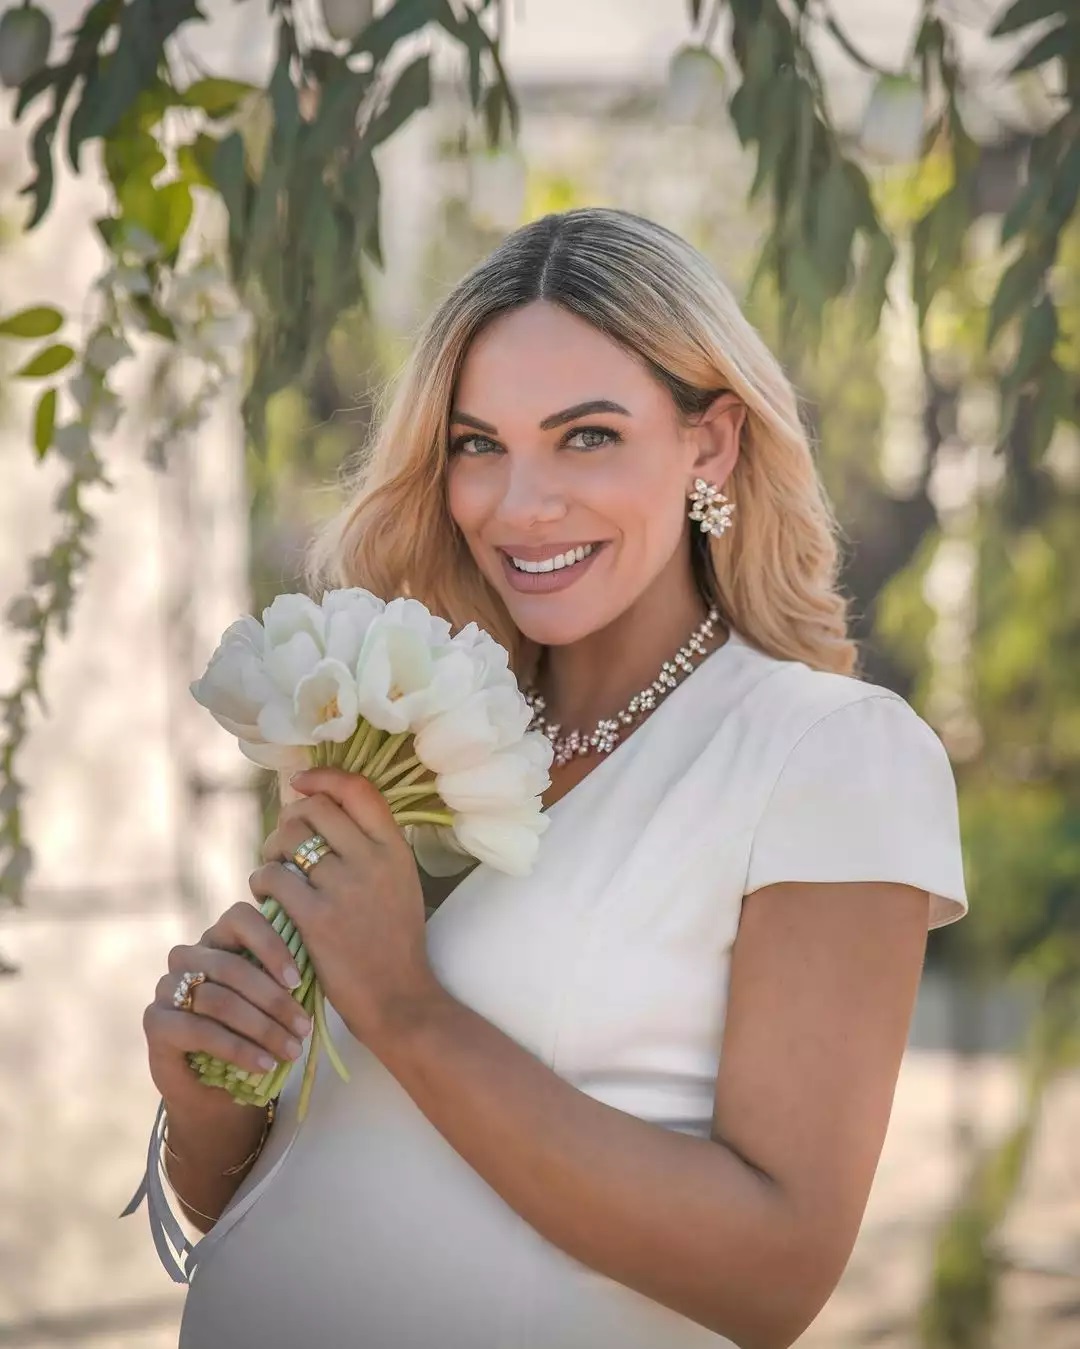 Πανέμορφη: Η Ιωάννα Μαλέσκου δημοσίευσε τις πρώτες φωτογραφίες από τον γάμο της! (εικόνες)